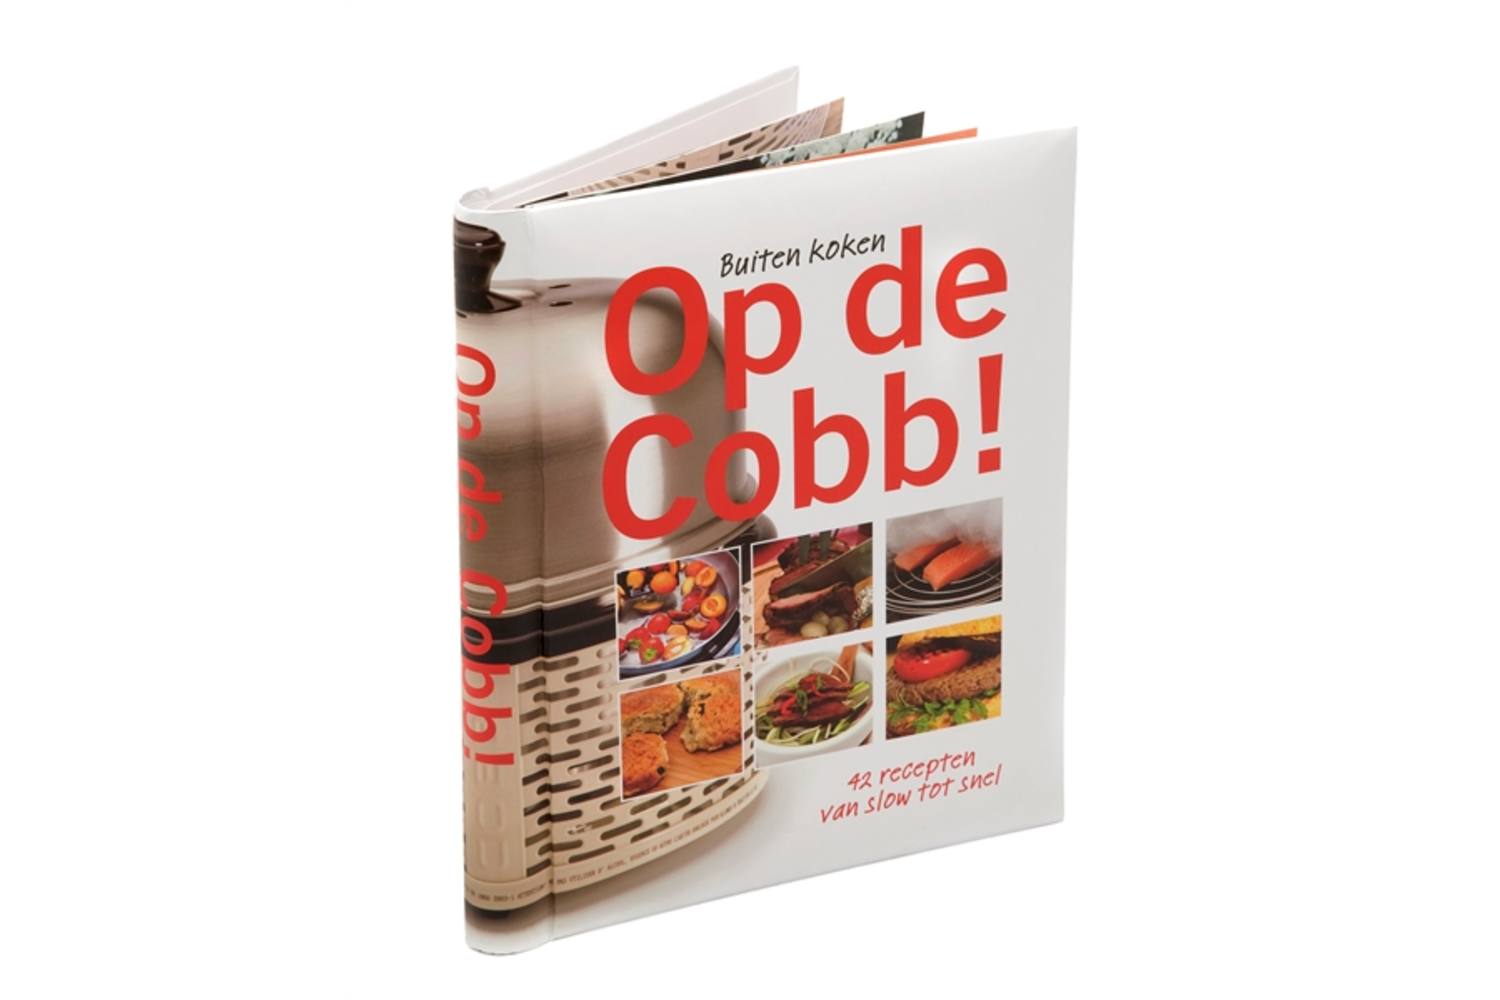 Cobb BBQ Kookboek - Op de Cobb deel 3